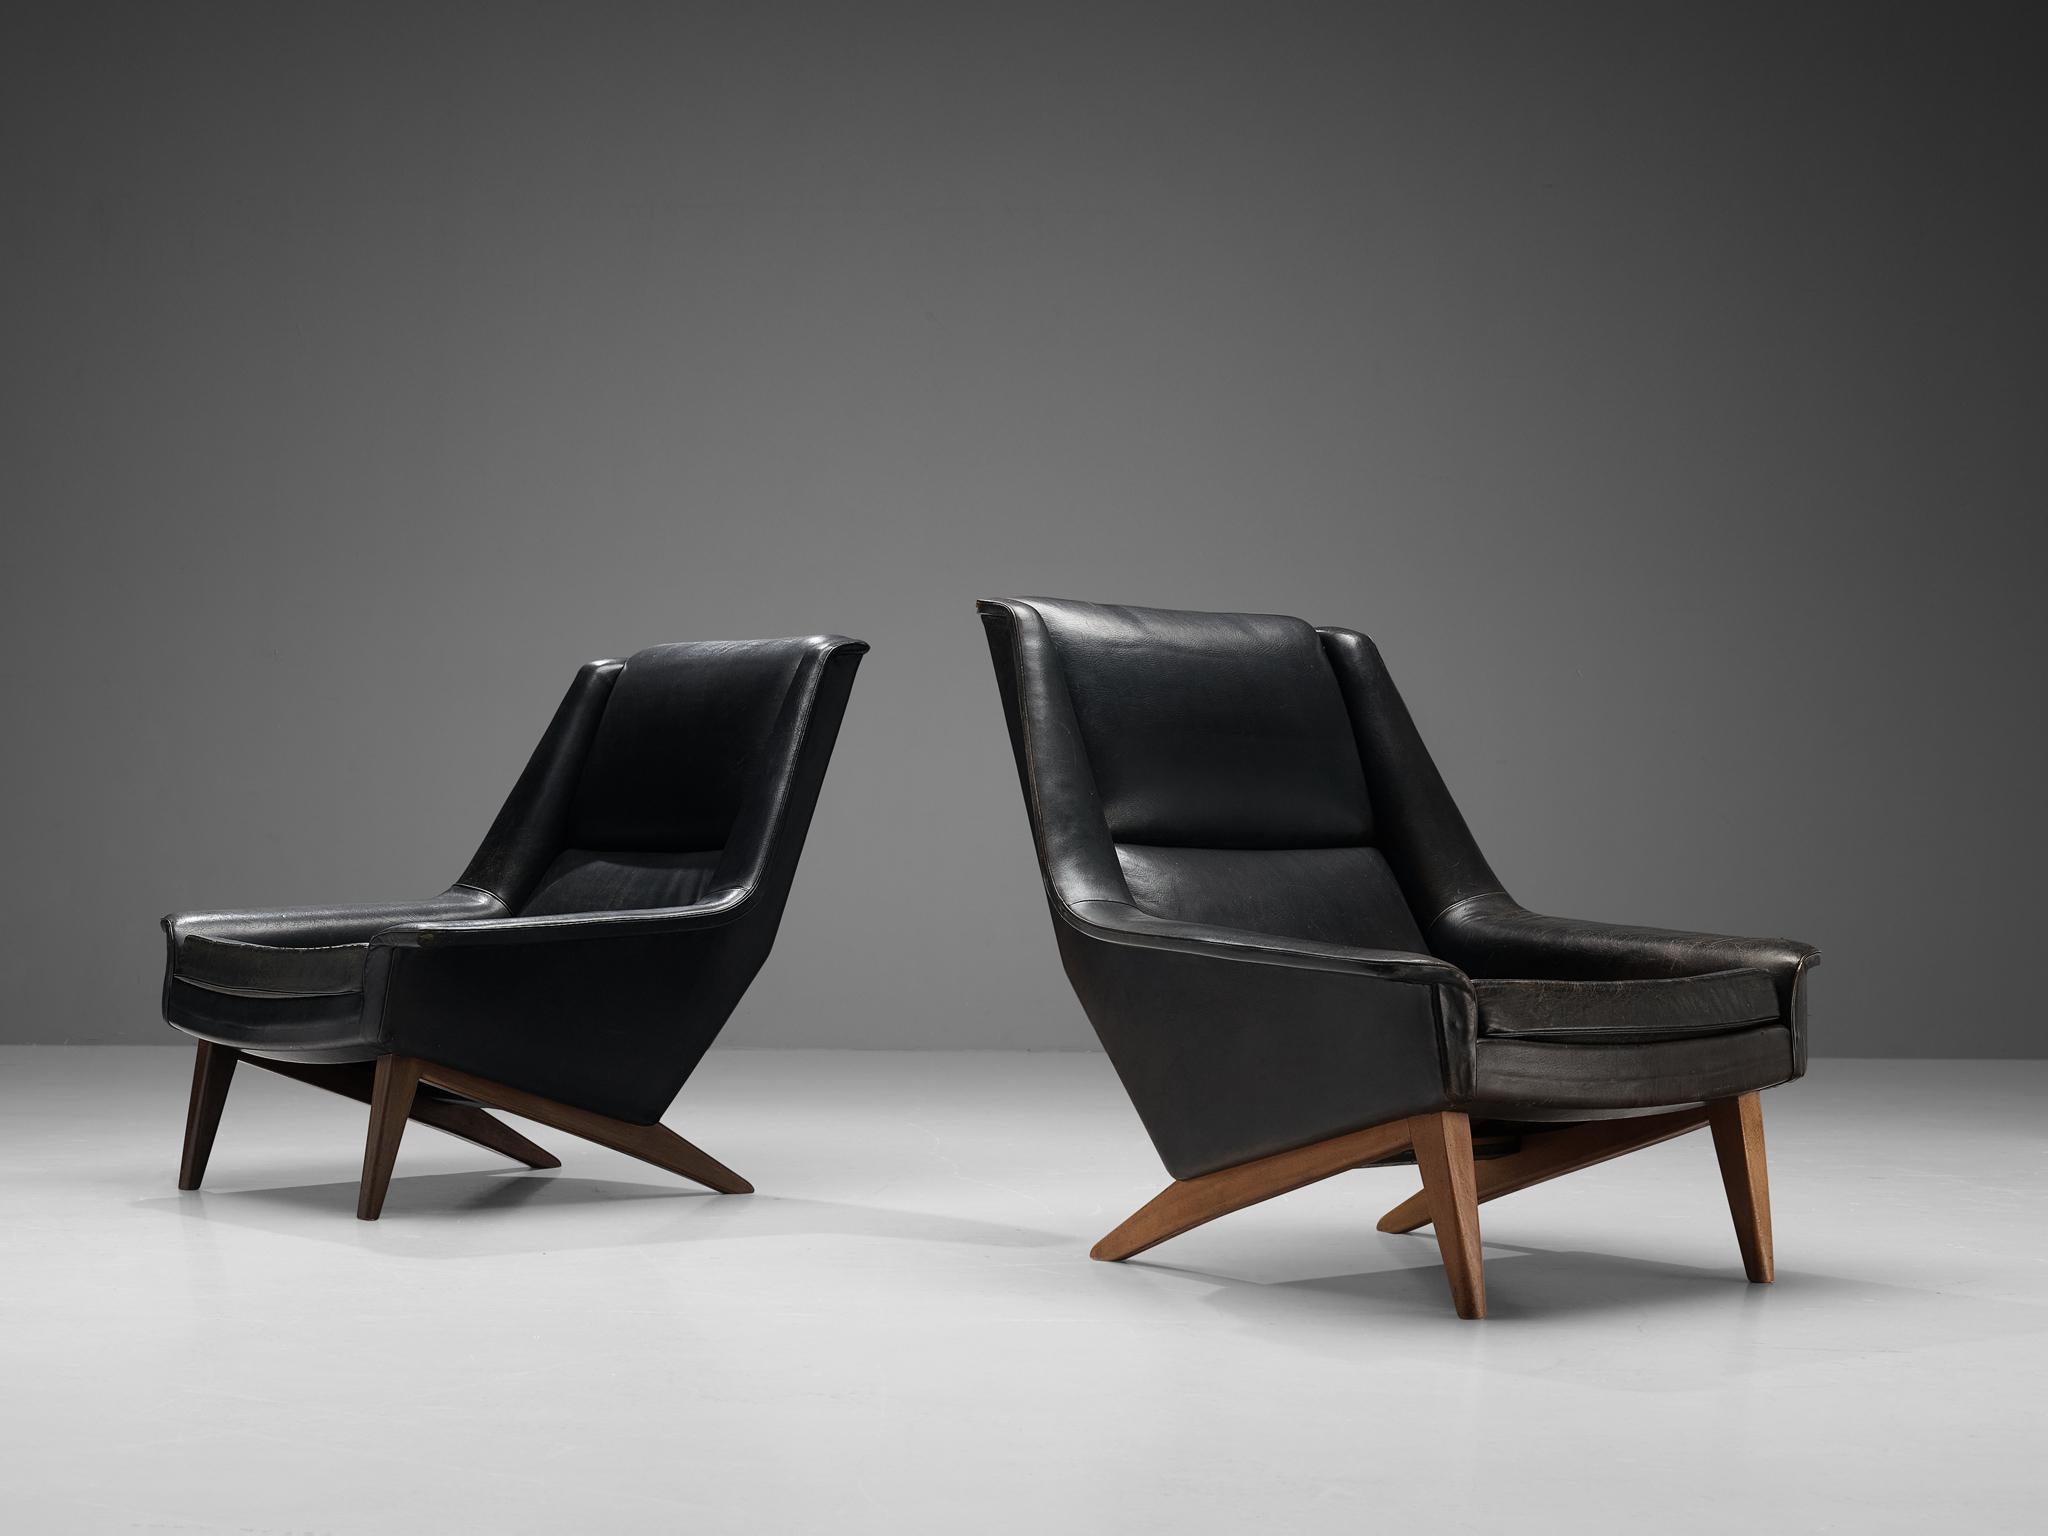 Folke Ohlsson pour Hansen, fauteuils, modèle '4410', cuir patiné, hêtre, Danemark, conçu en 1957

Ces chaises longues de haute qualité se caractérisent par un design élégant et intemporel basé sur des formes élégantes et des lignes épurées. Les